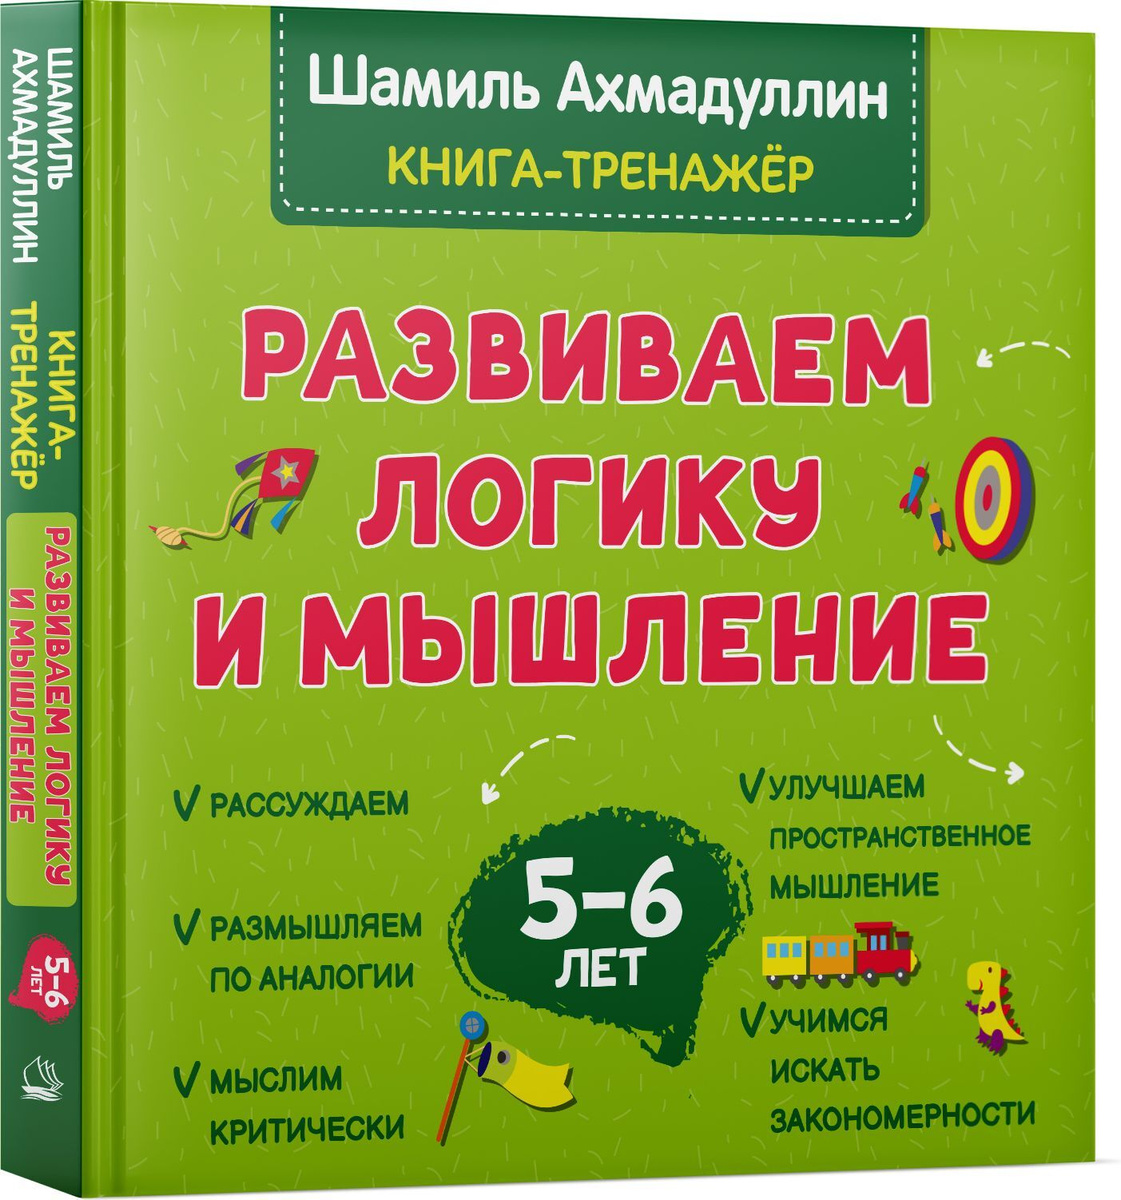 Развиваем логику и мышление. Книга тренинг для детей 5-6 лет. Готовимся к школе | Ахмадуллин Шамиль Тагирович #1